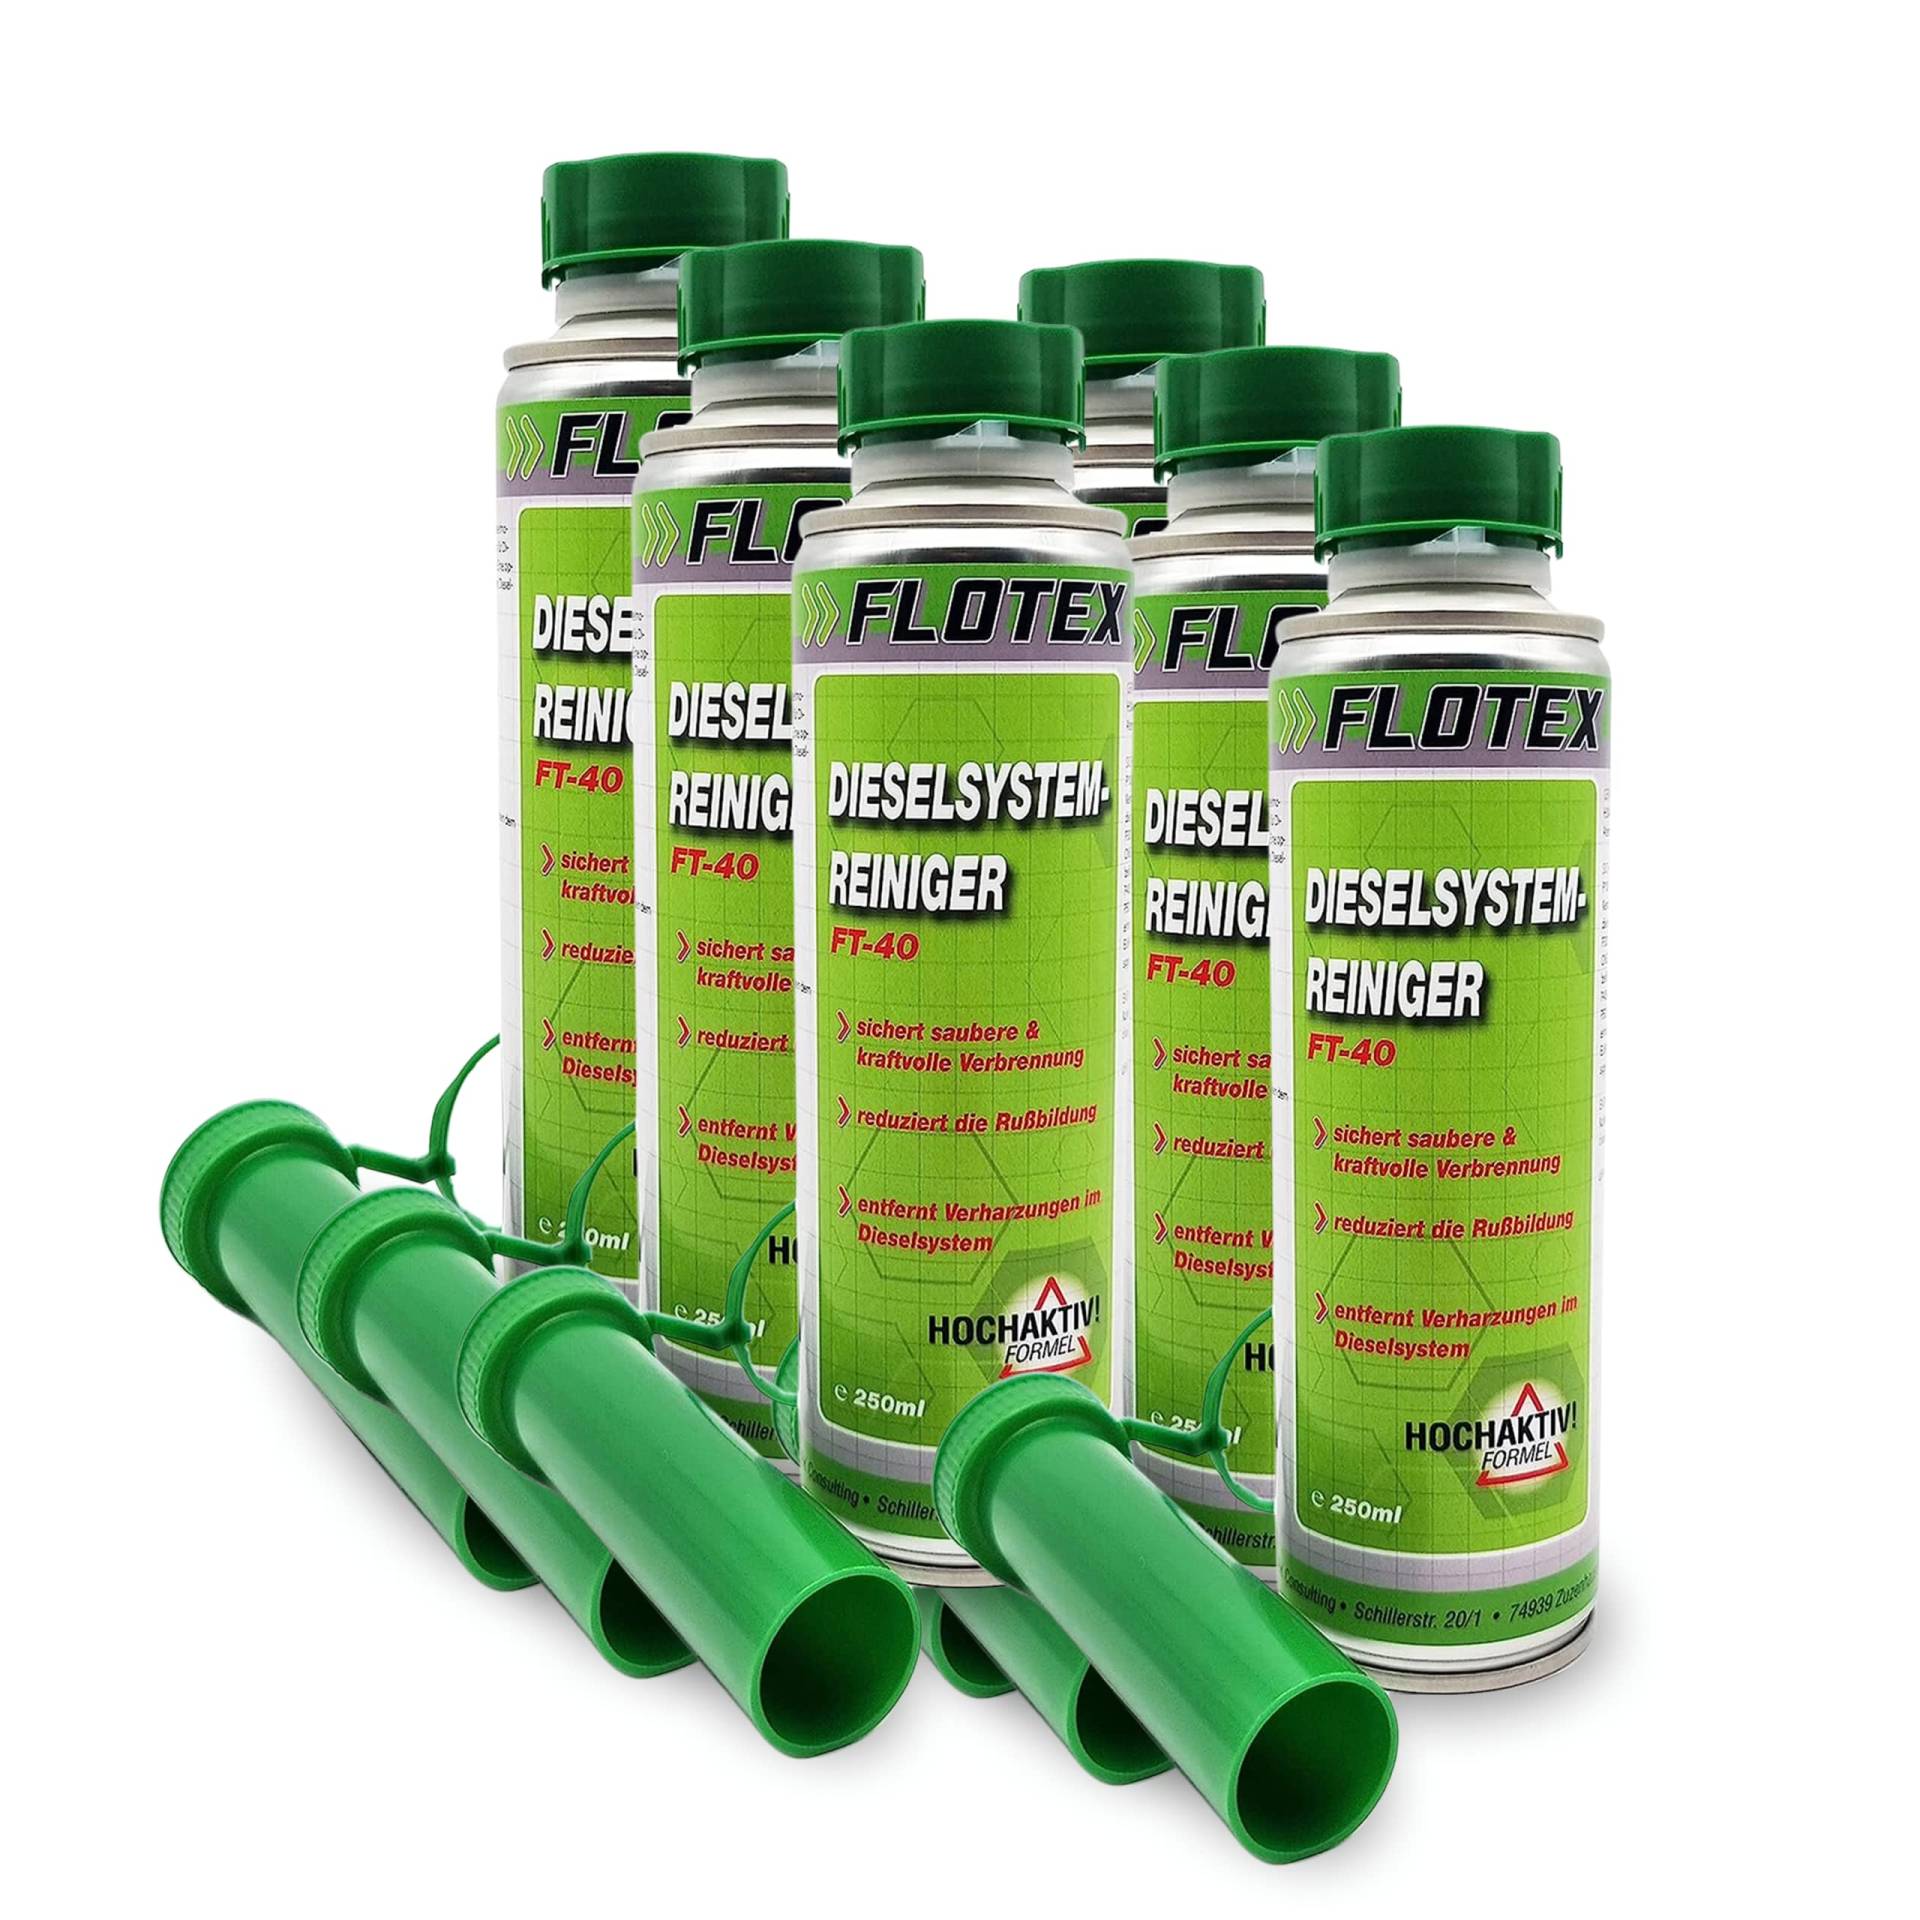 Flotex® - Effektiver Diesel Systemreiniger Additiv, 6 x 250ml | Diesel Zusatz für Dieselmotoren | Effiziente Verbrennung | Löst Verschmutzung & Verharzung im Dieselsystem von Flotex